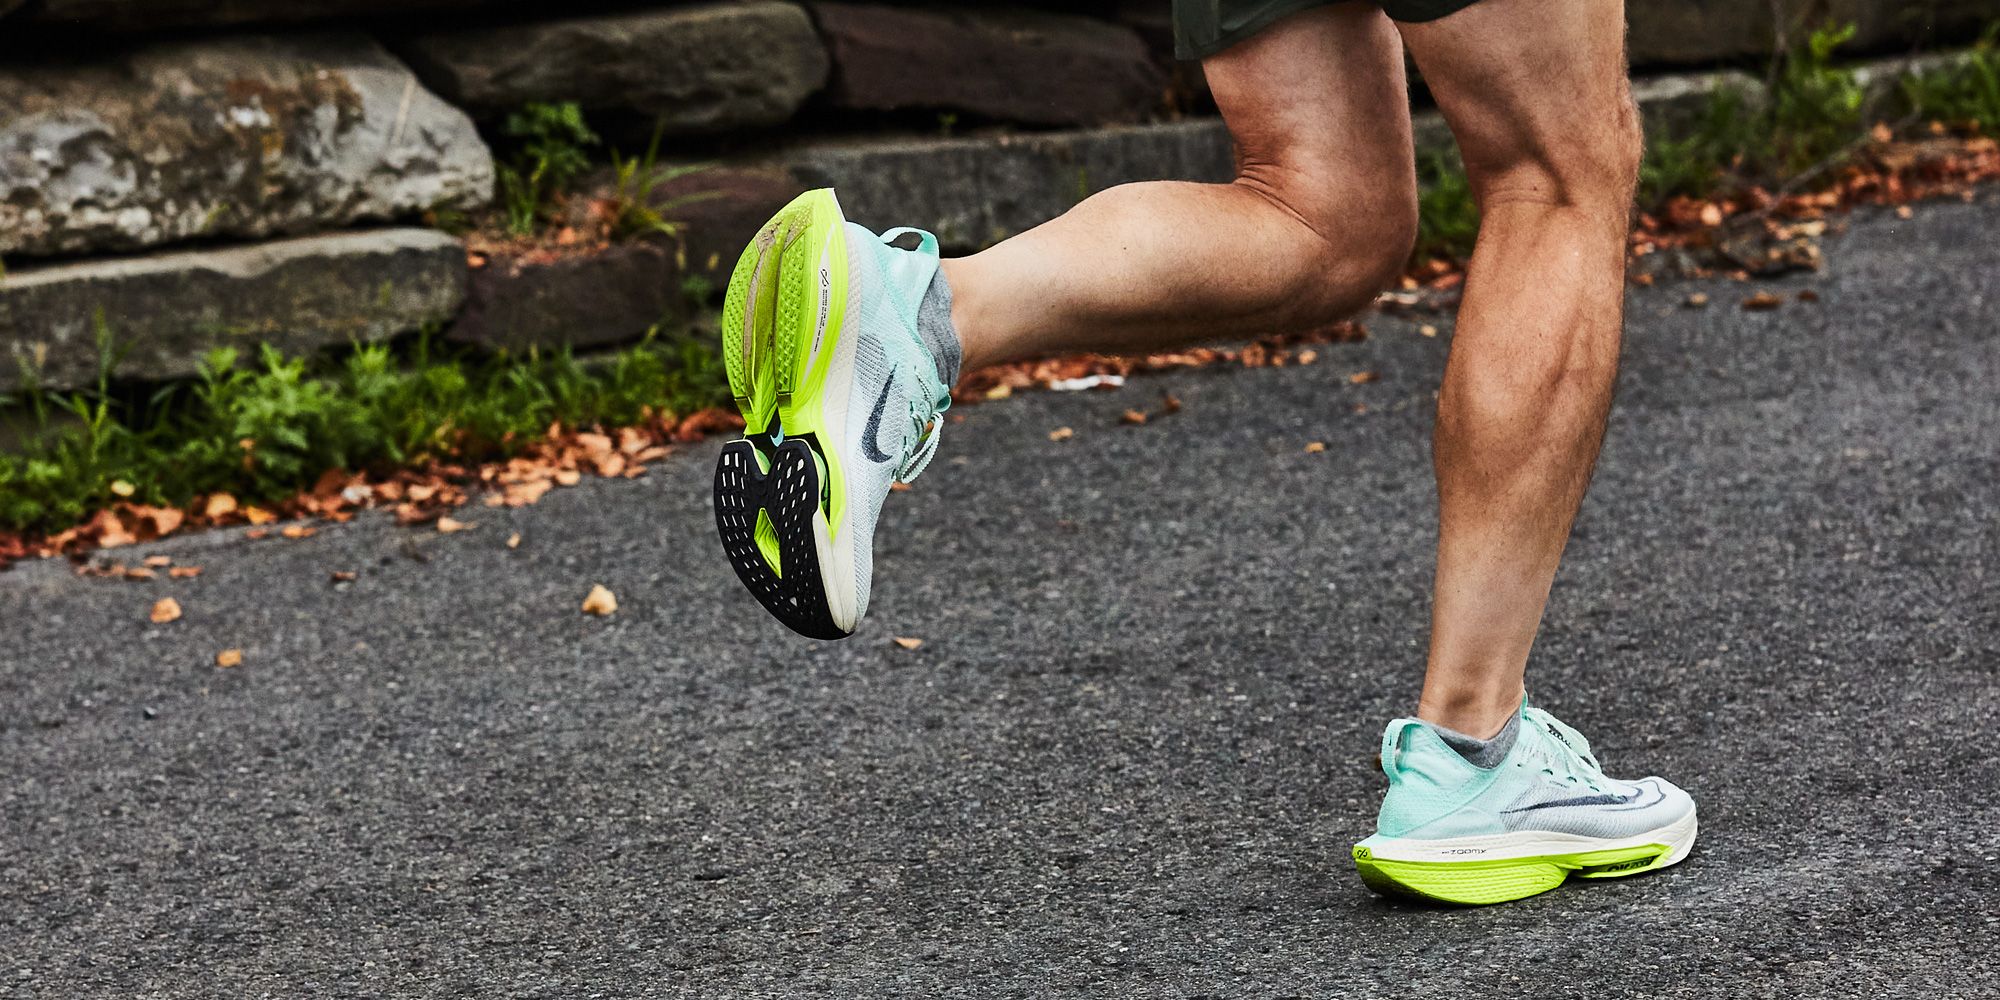 Kiat Menghindari Cedera dengan Memilih Sepatu Lari yang Sesuai